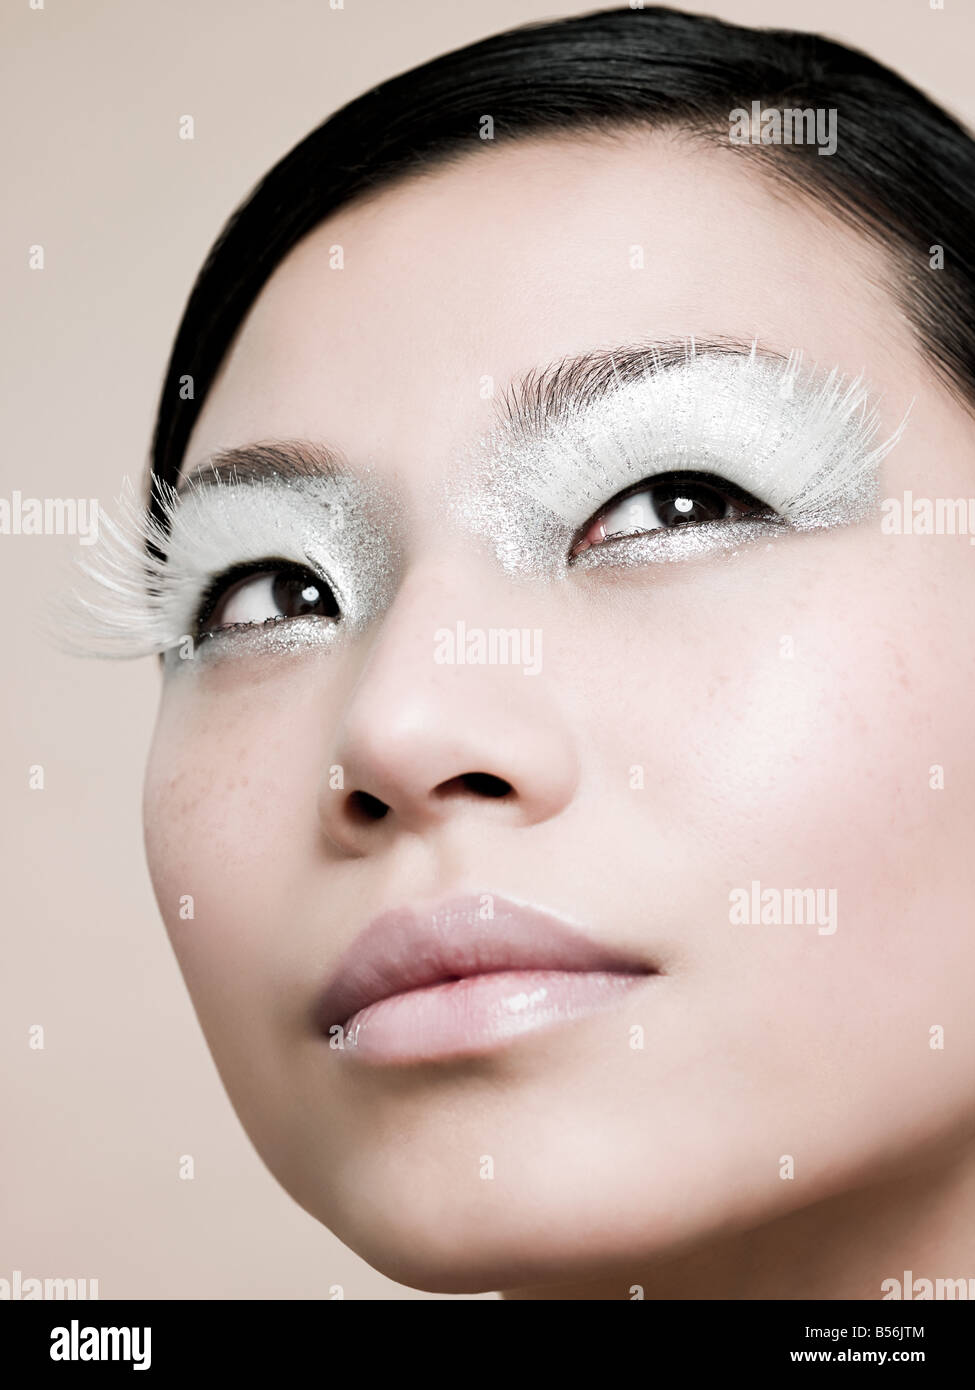 Eine junge Frau trägt weiße Wimpern Stockfotografie - Alamy